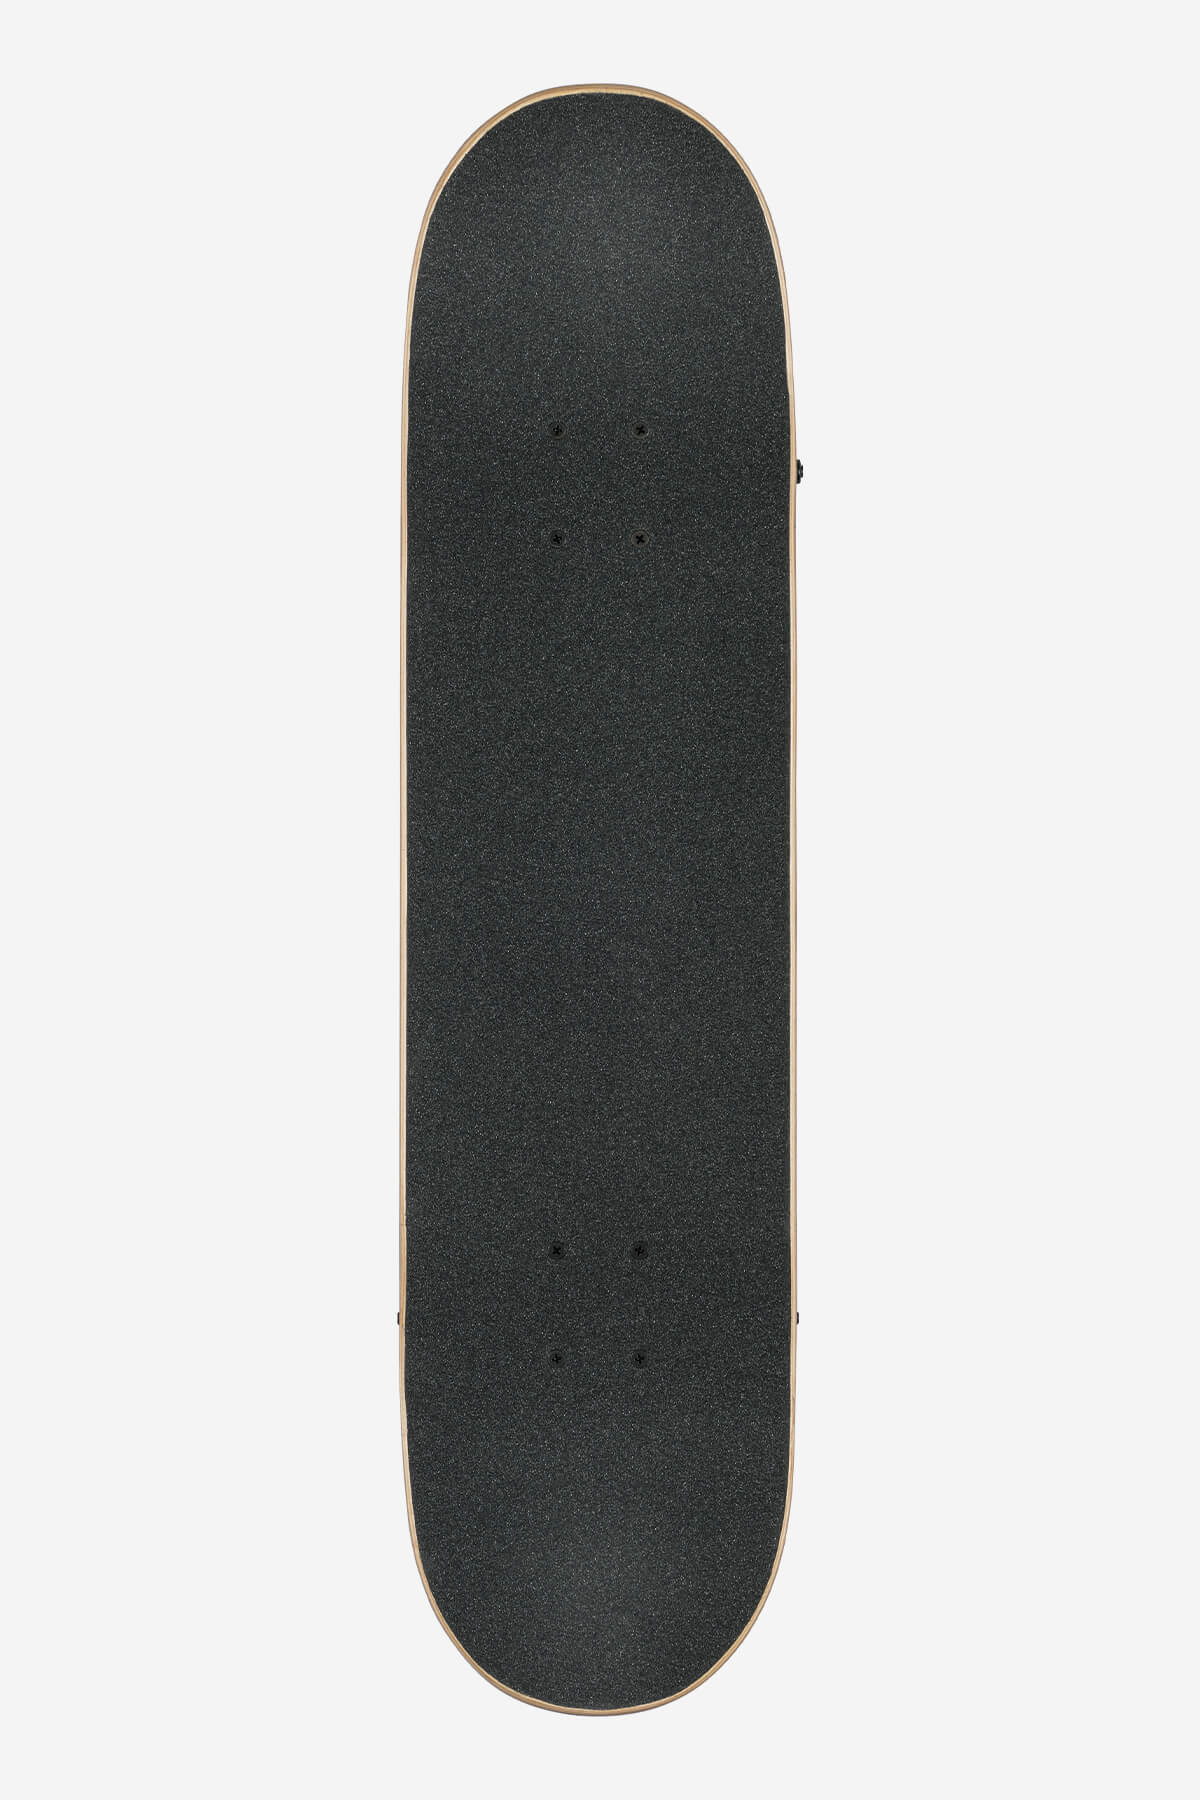 Globe Skateboard complet G1 Lineform 7.75" complet Skateboard en noir